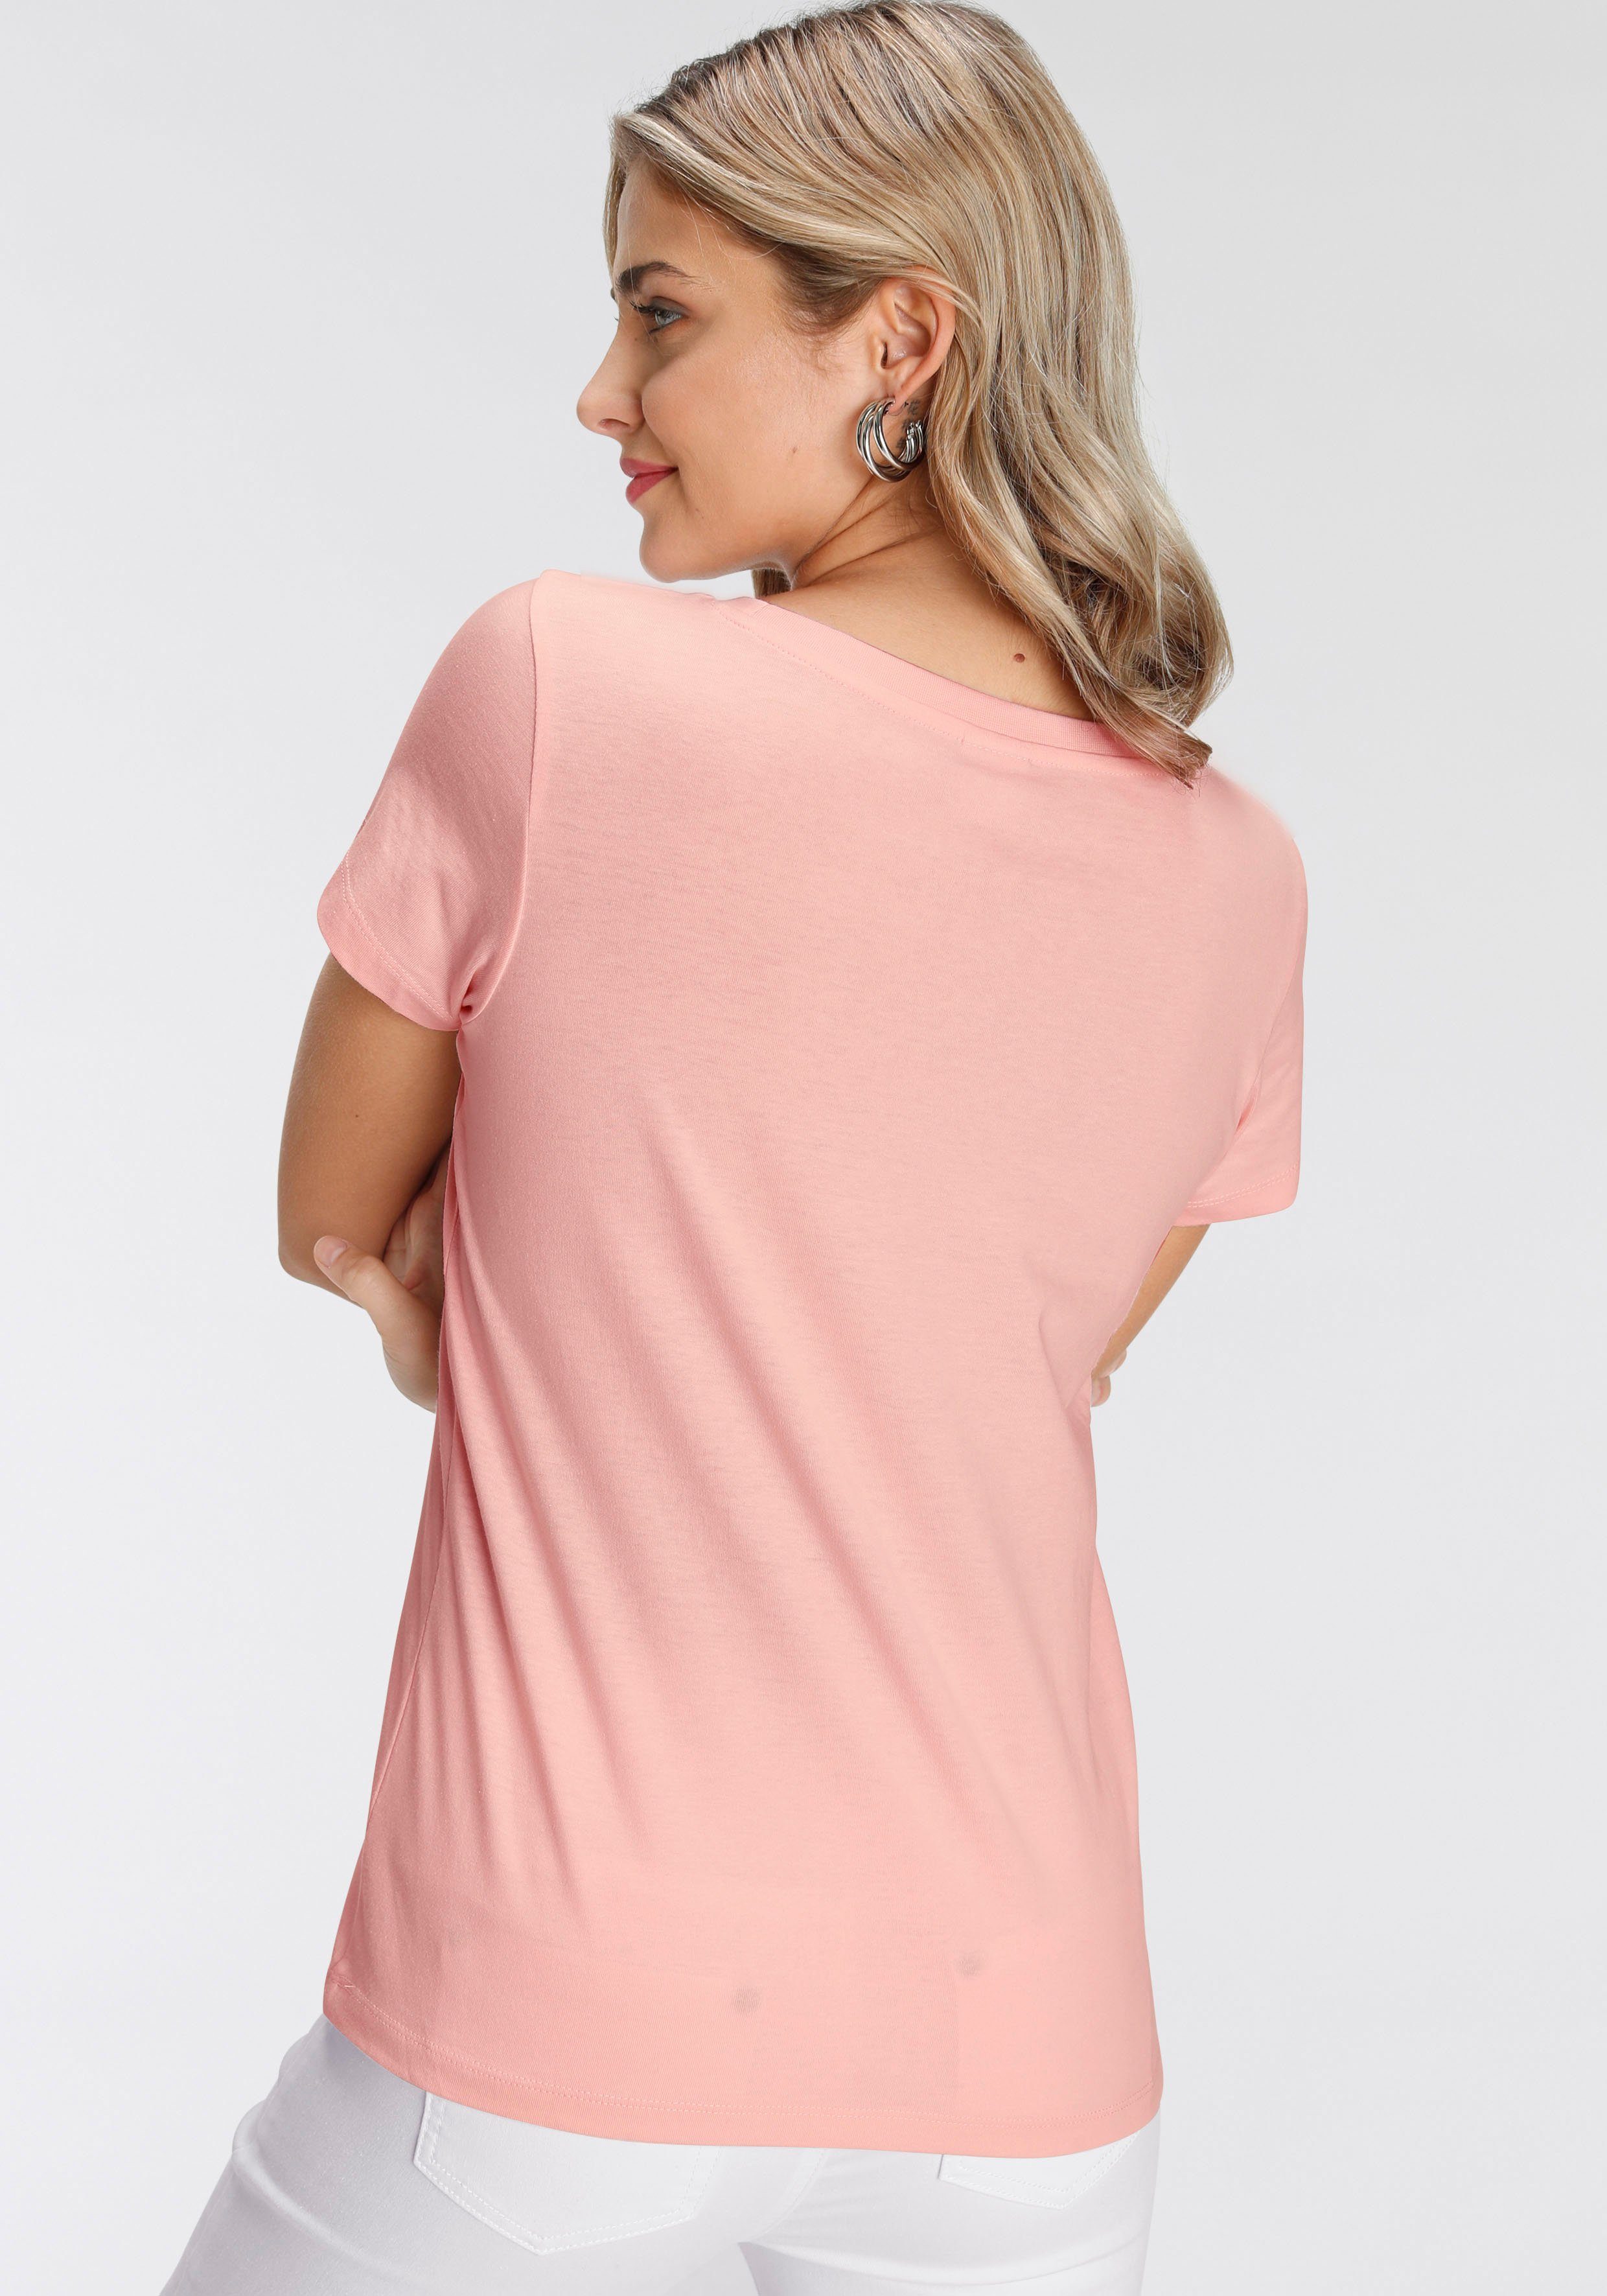 Print-Shirt in modischen rosa verschiedenen Designs AJC